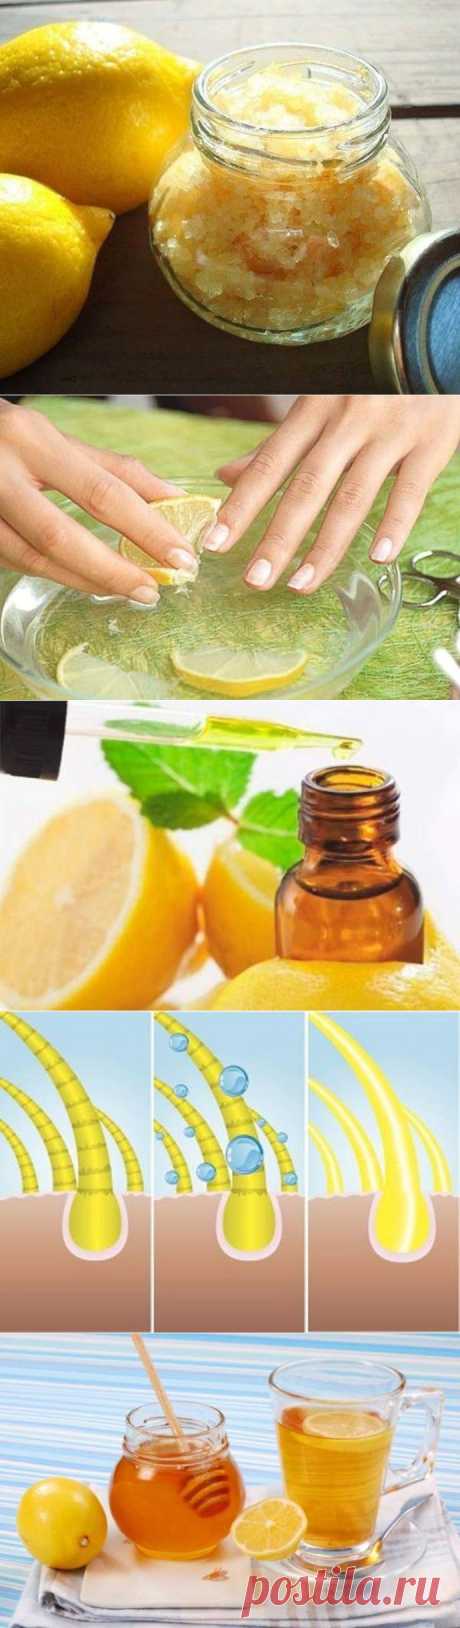 Несколько необычных способов использования лимона / Будьте здоровы